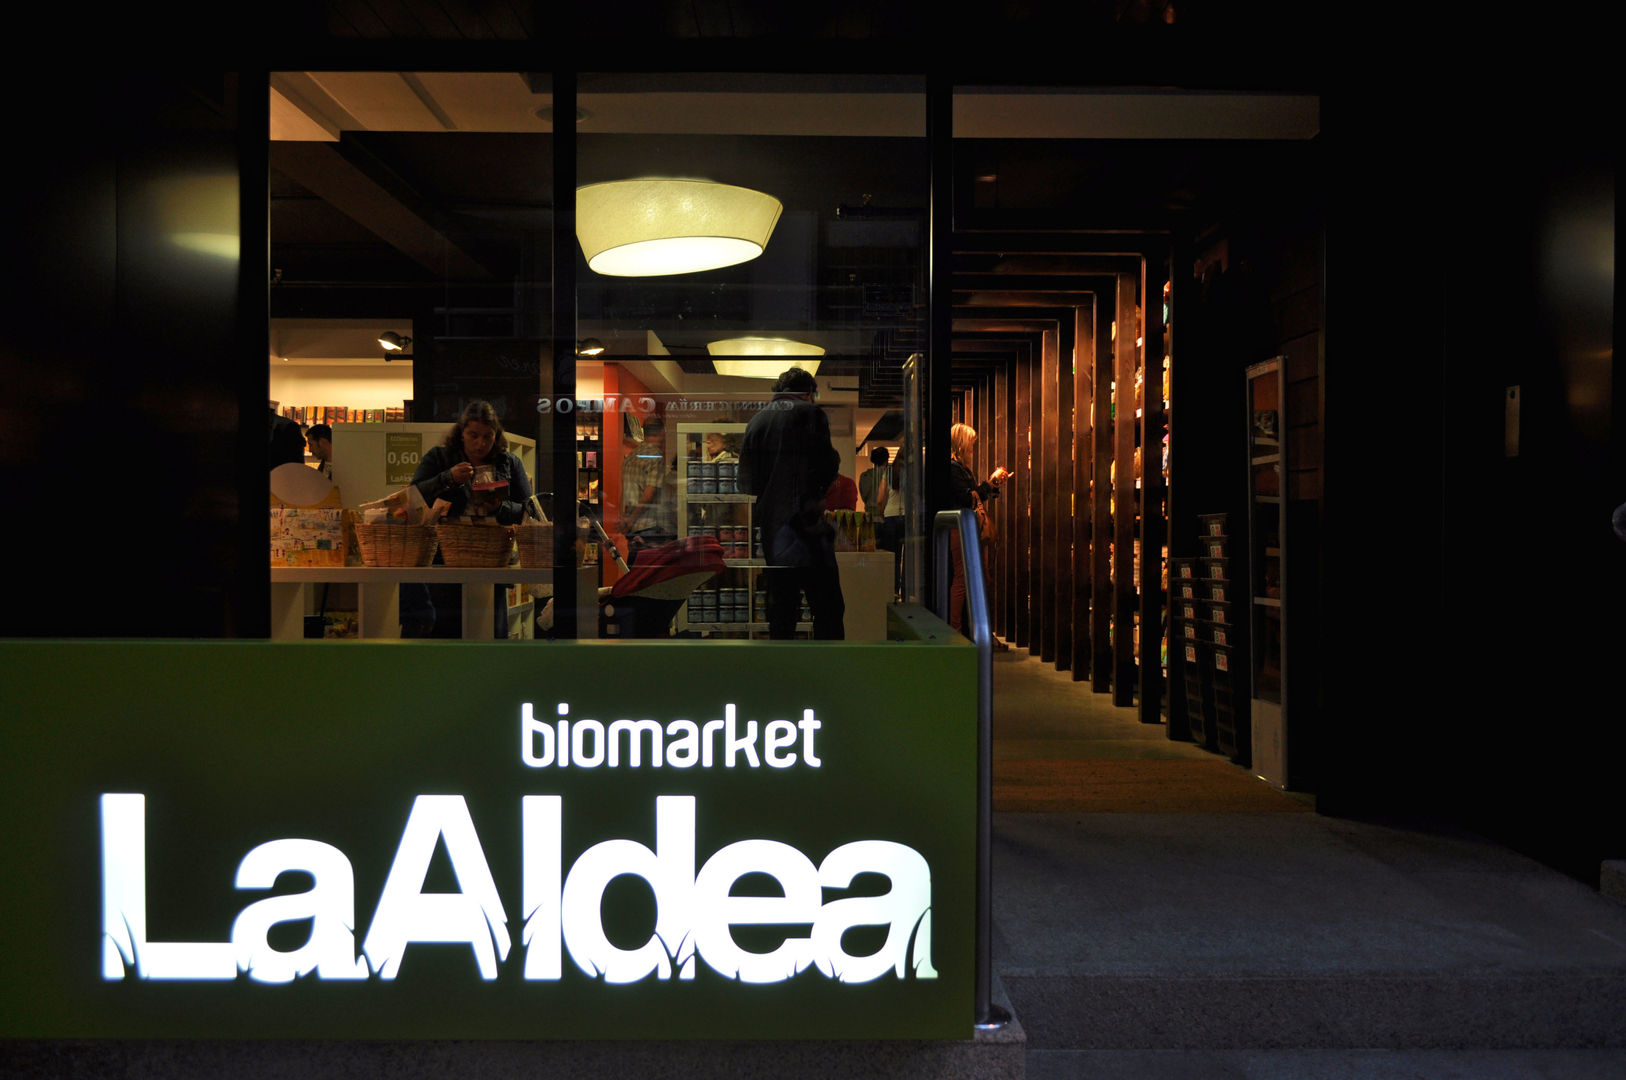 Supermercado Ecológico "La Aldea Biomarket", Intra Arquitectos Intra Arquitectos Commercial spaces Commercial Spaces